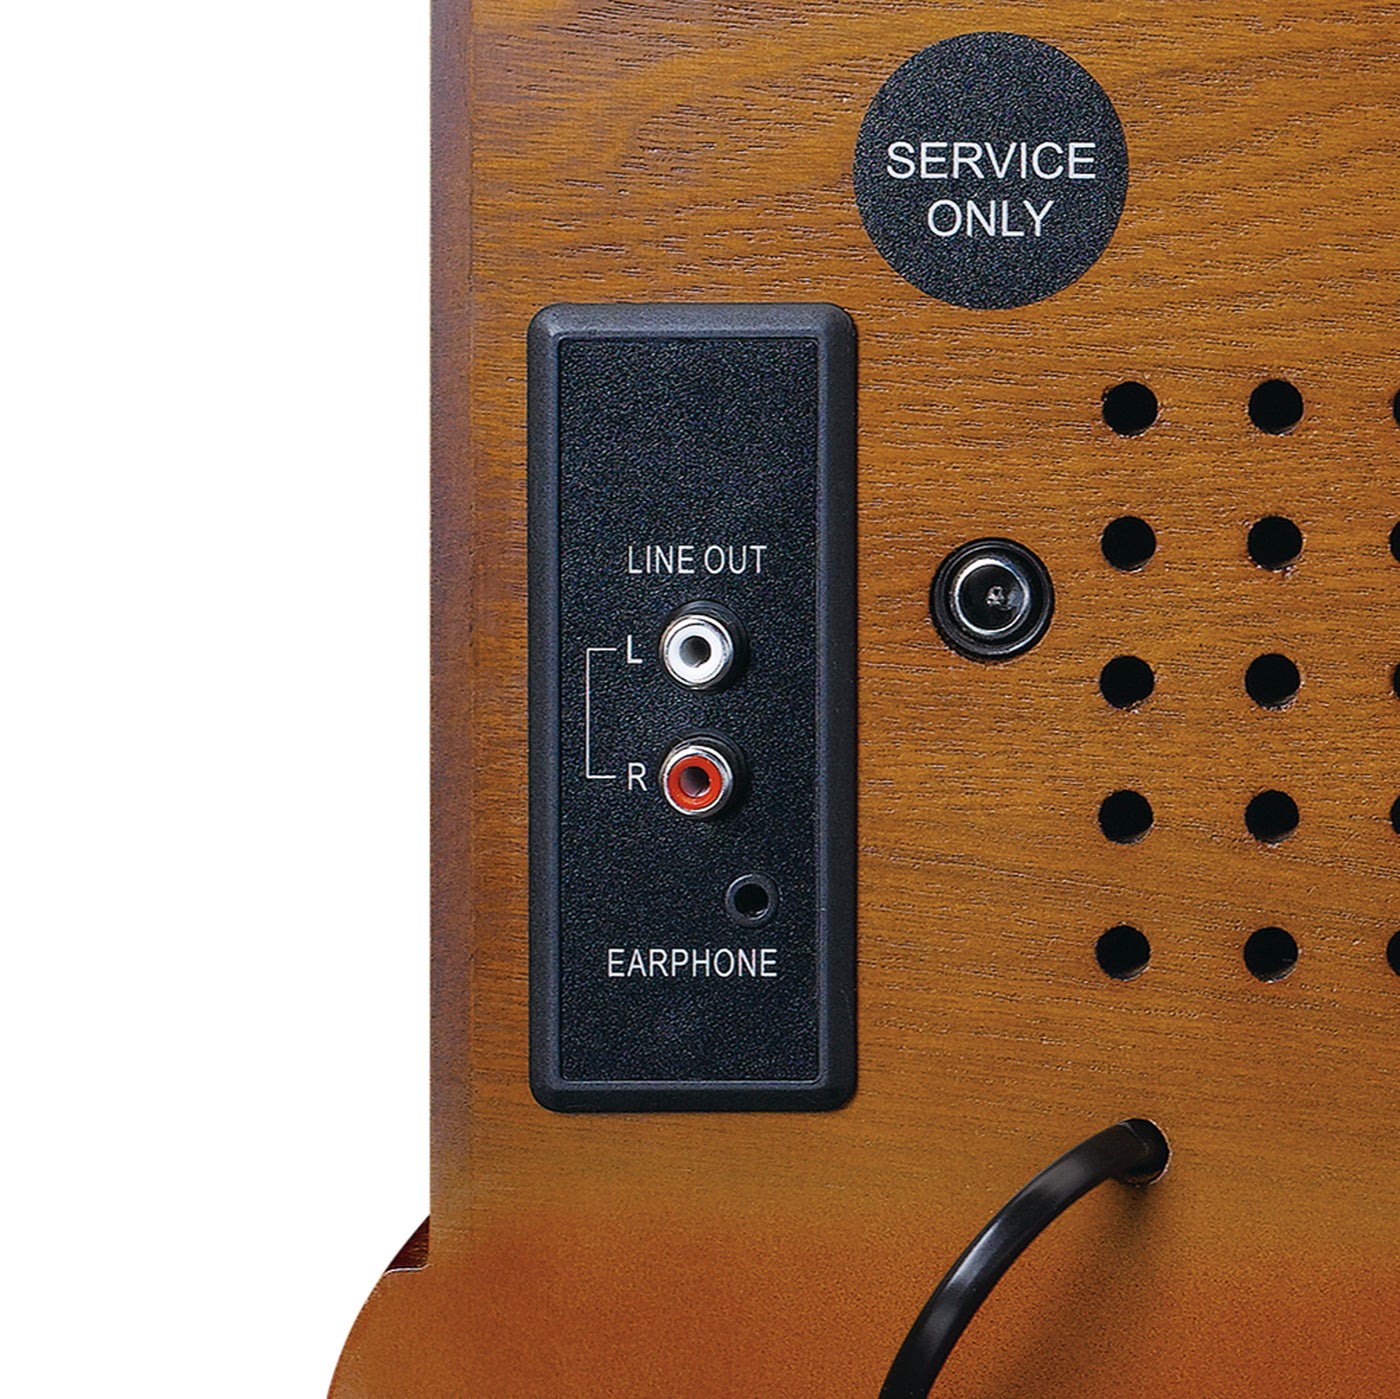 CLASSIC PHONO TCD-2570 - Gramofon z radiem DAB+/FM, kodowaniem USB, odtwarzaczem CD i kasetami - Drewno